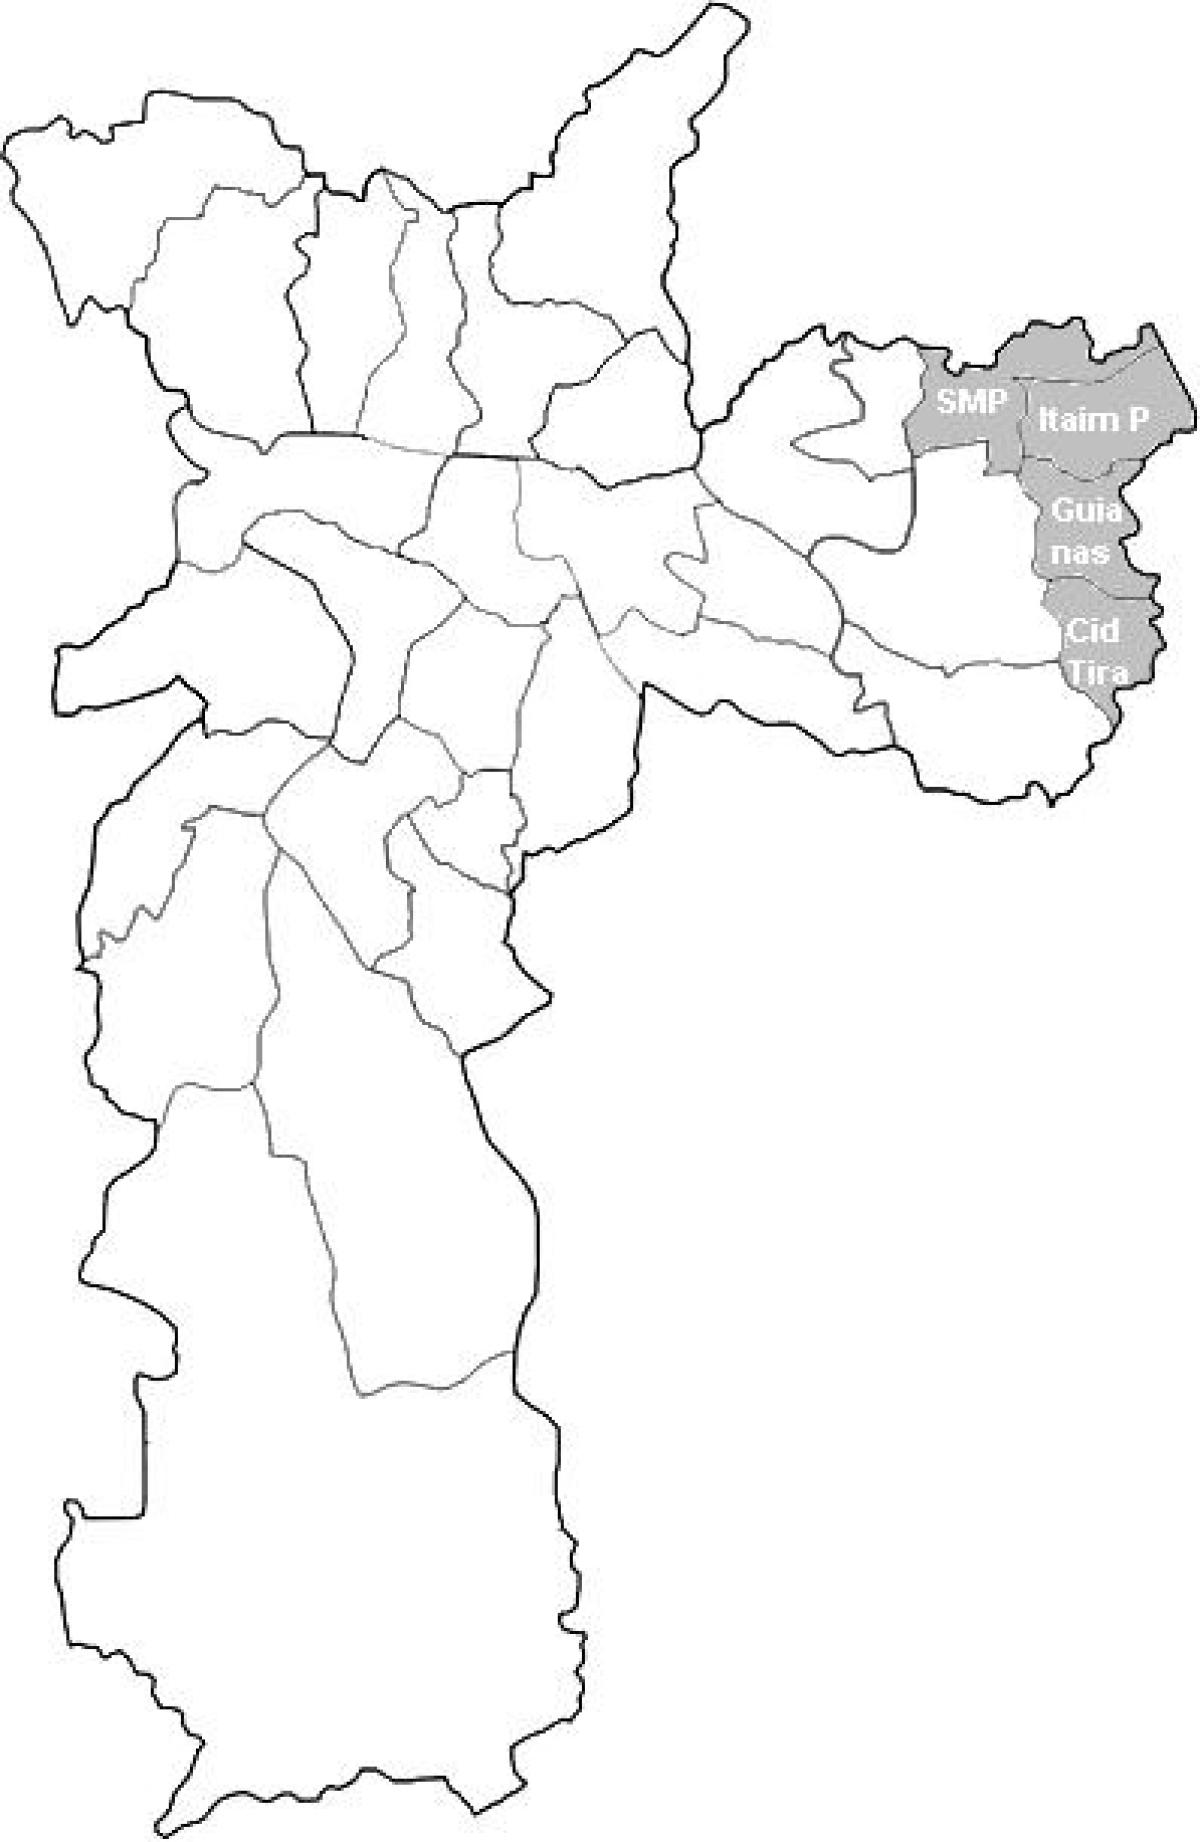 Карта зона Тимор 2 Сао Пауло